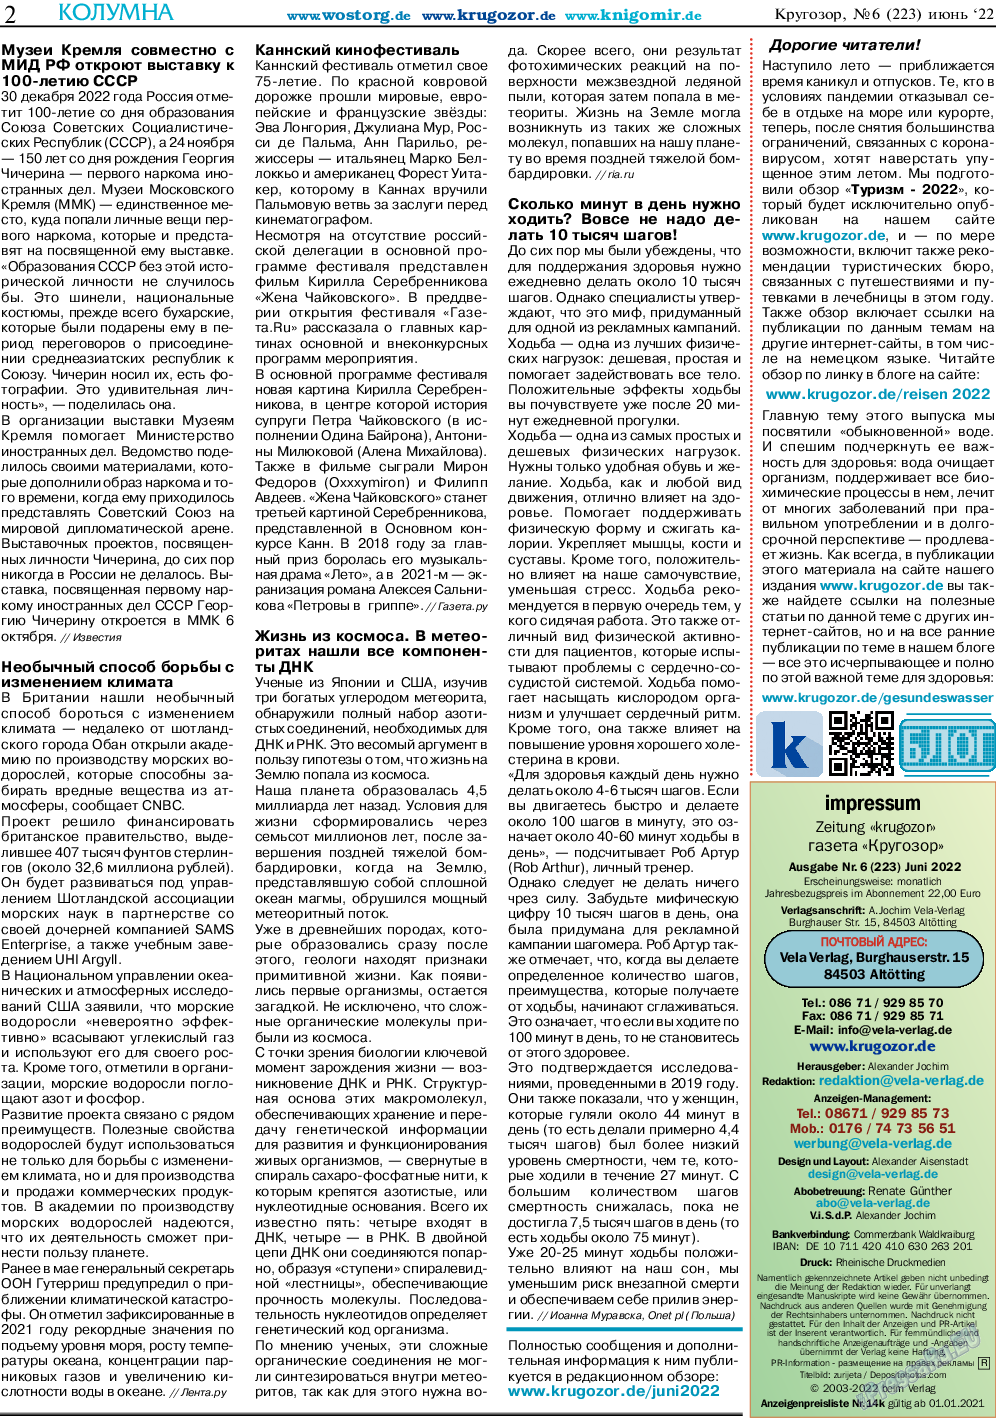 Кругозор, газета. 2022 №6 стр.2